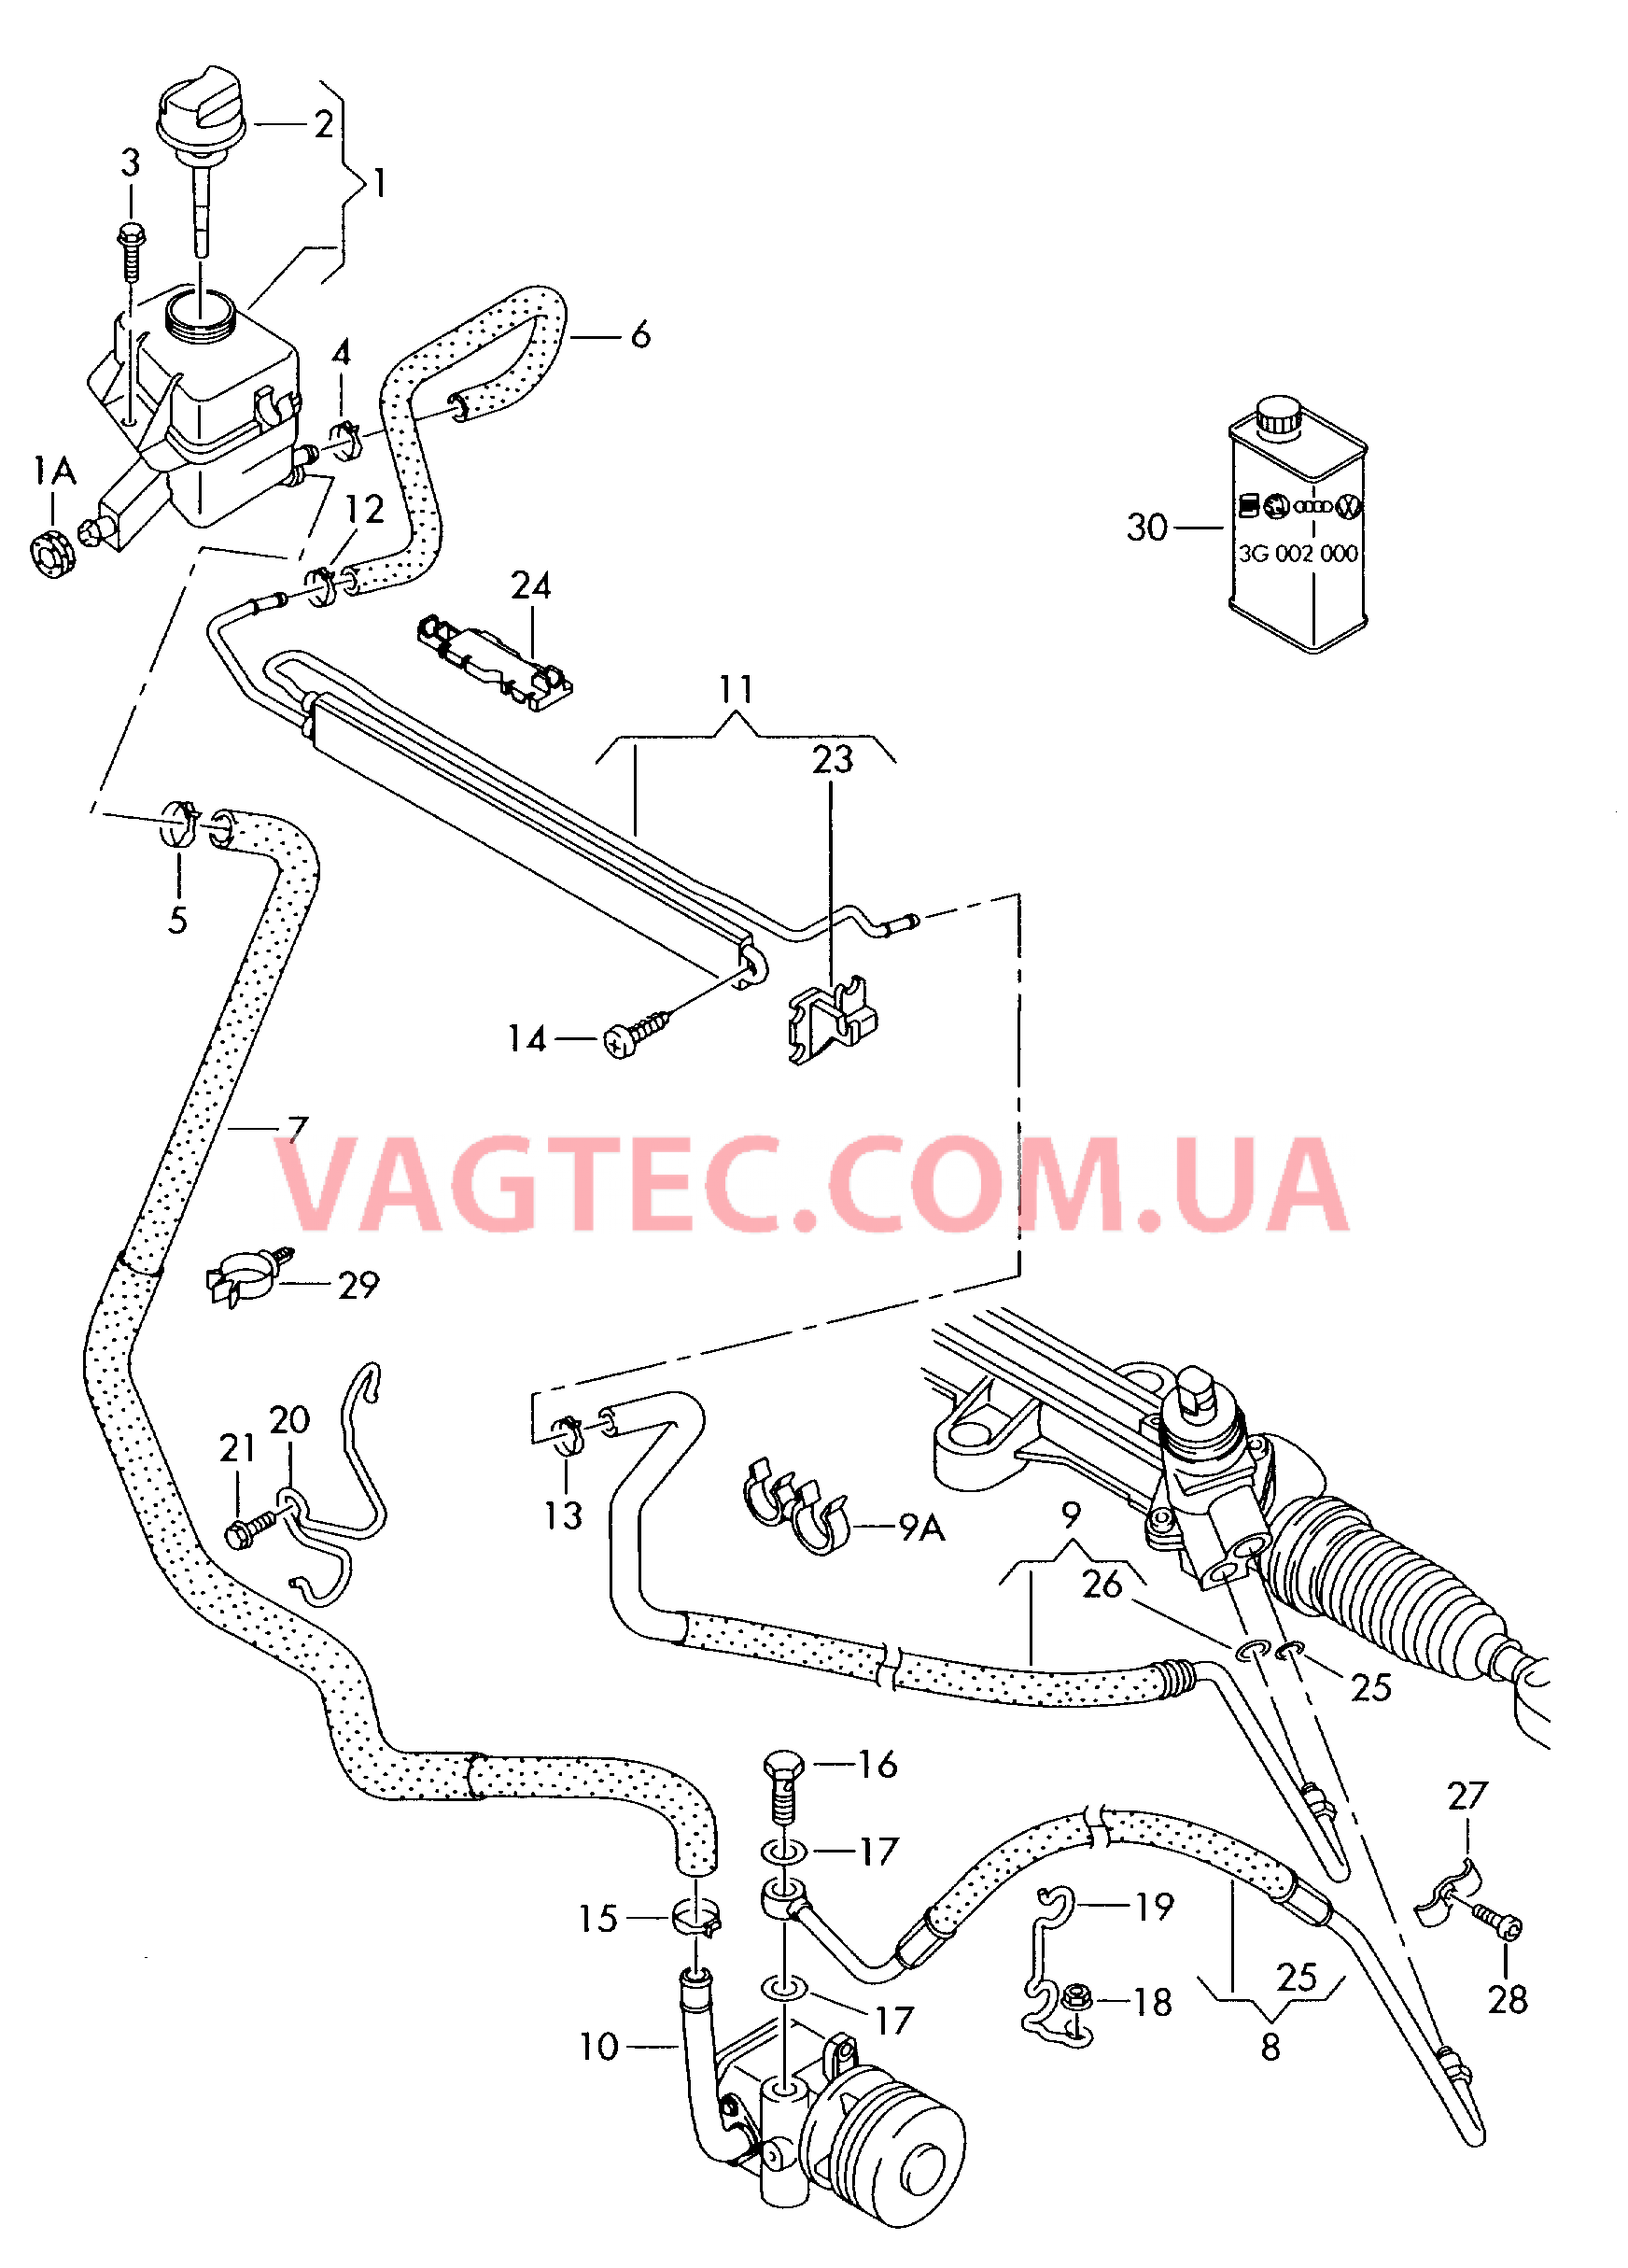 Масляный бачок с соединительными деталями, шлангами  для ГУРа  для VOLKSWAGEN Transporter 2004-2